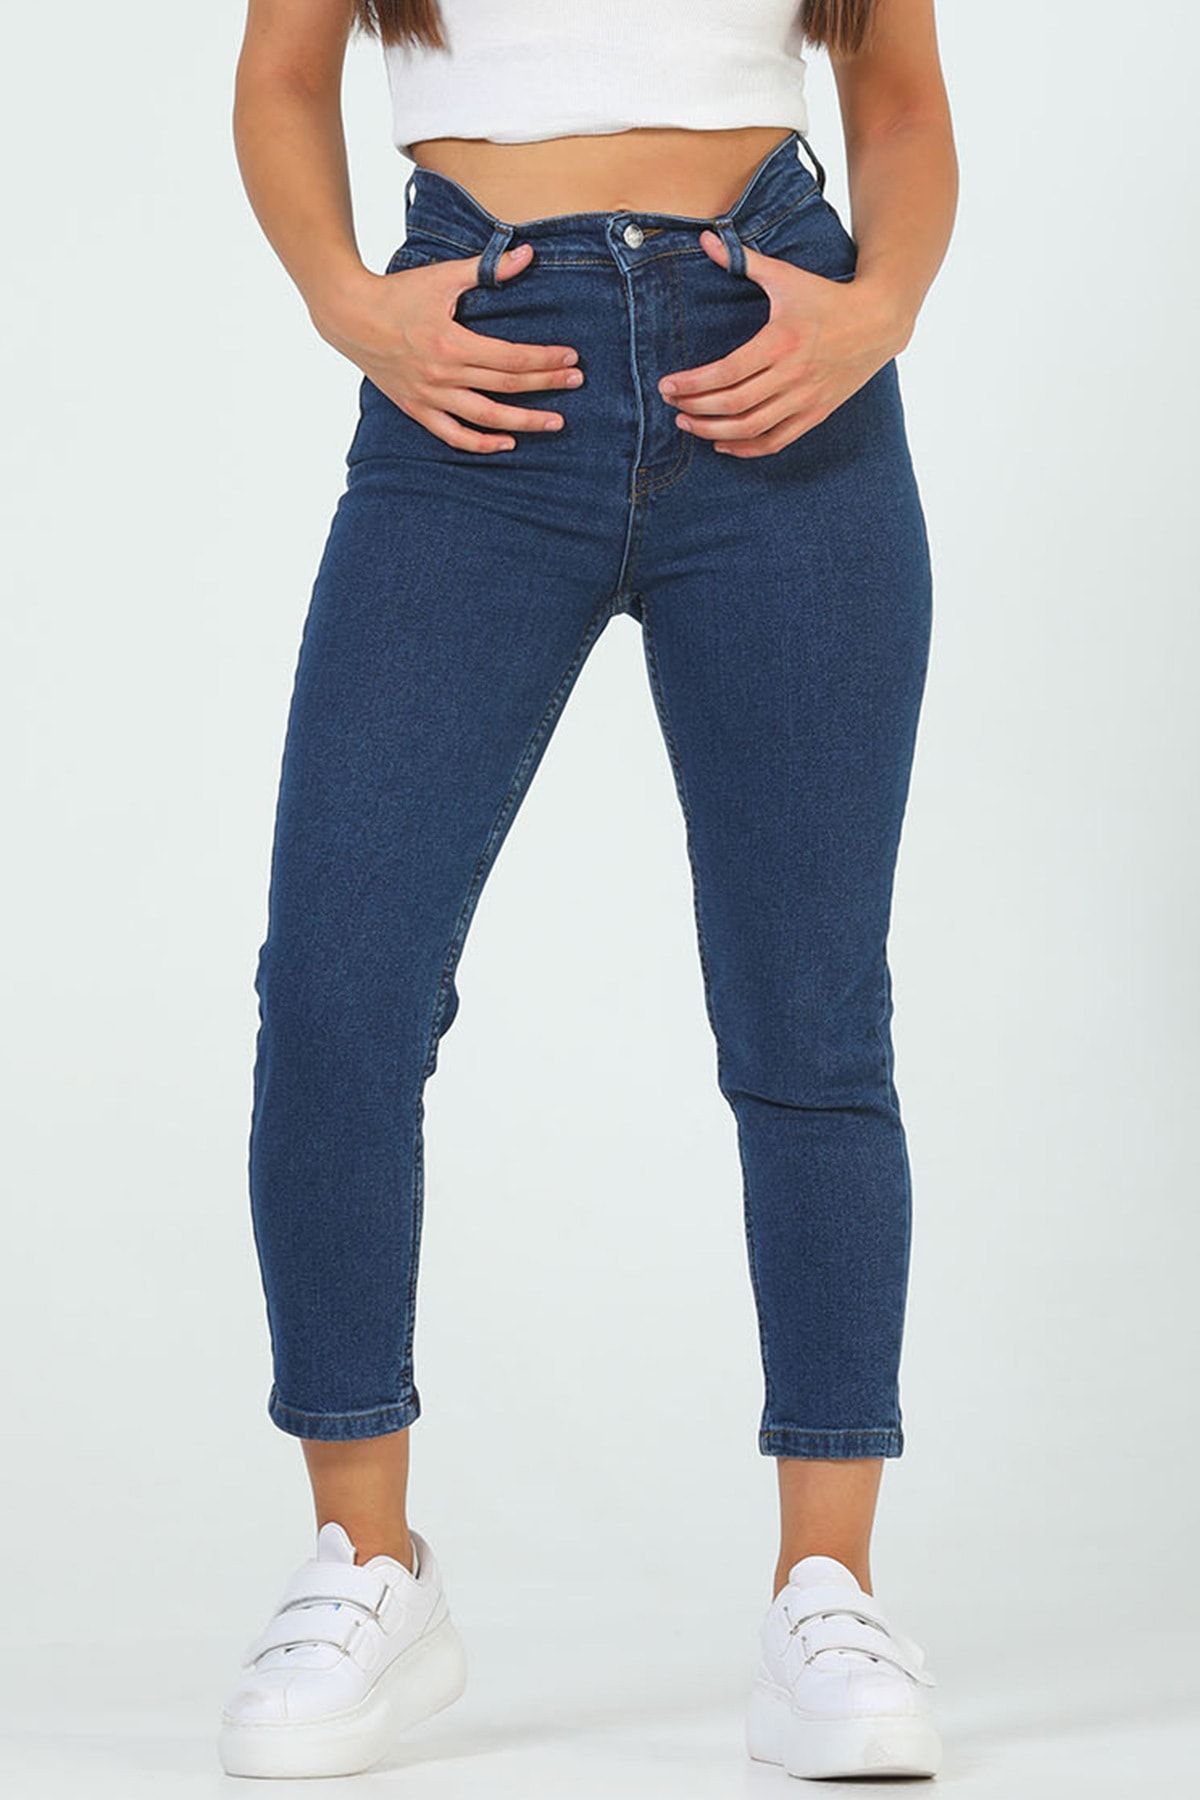 Julude Lacivert Kadın Yüksek Bel Jeans Pantolon